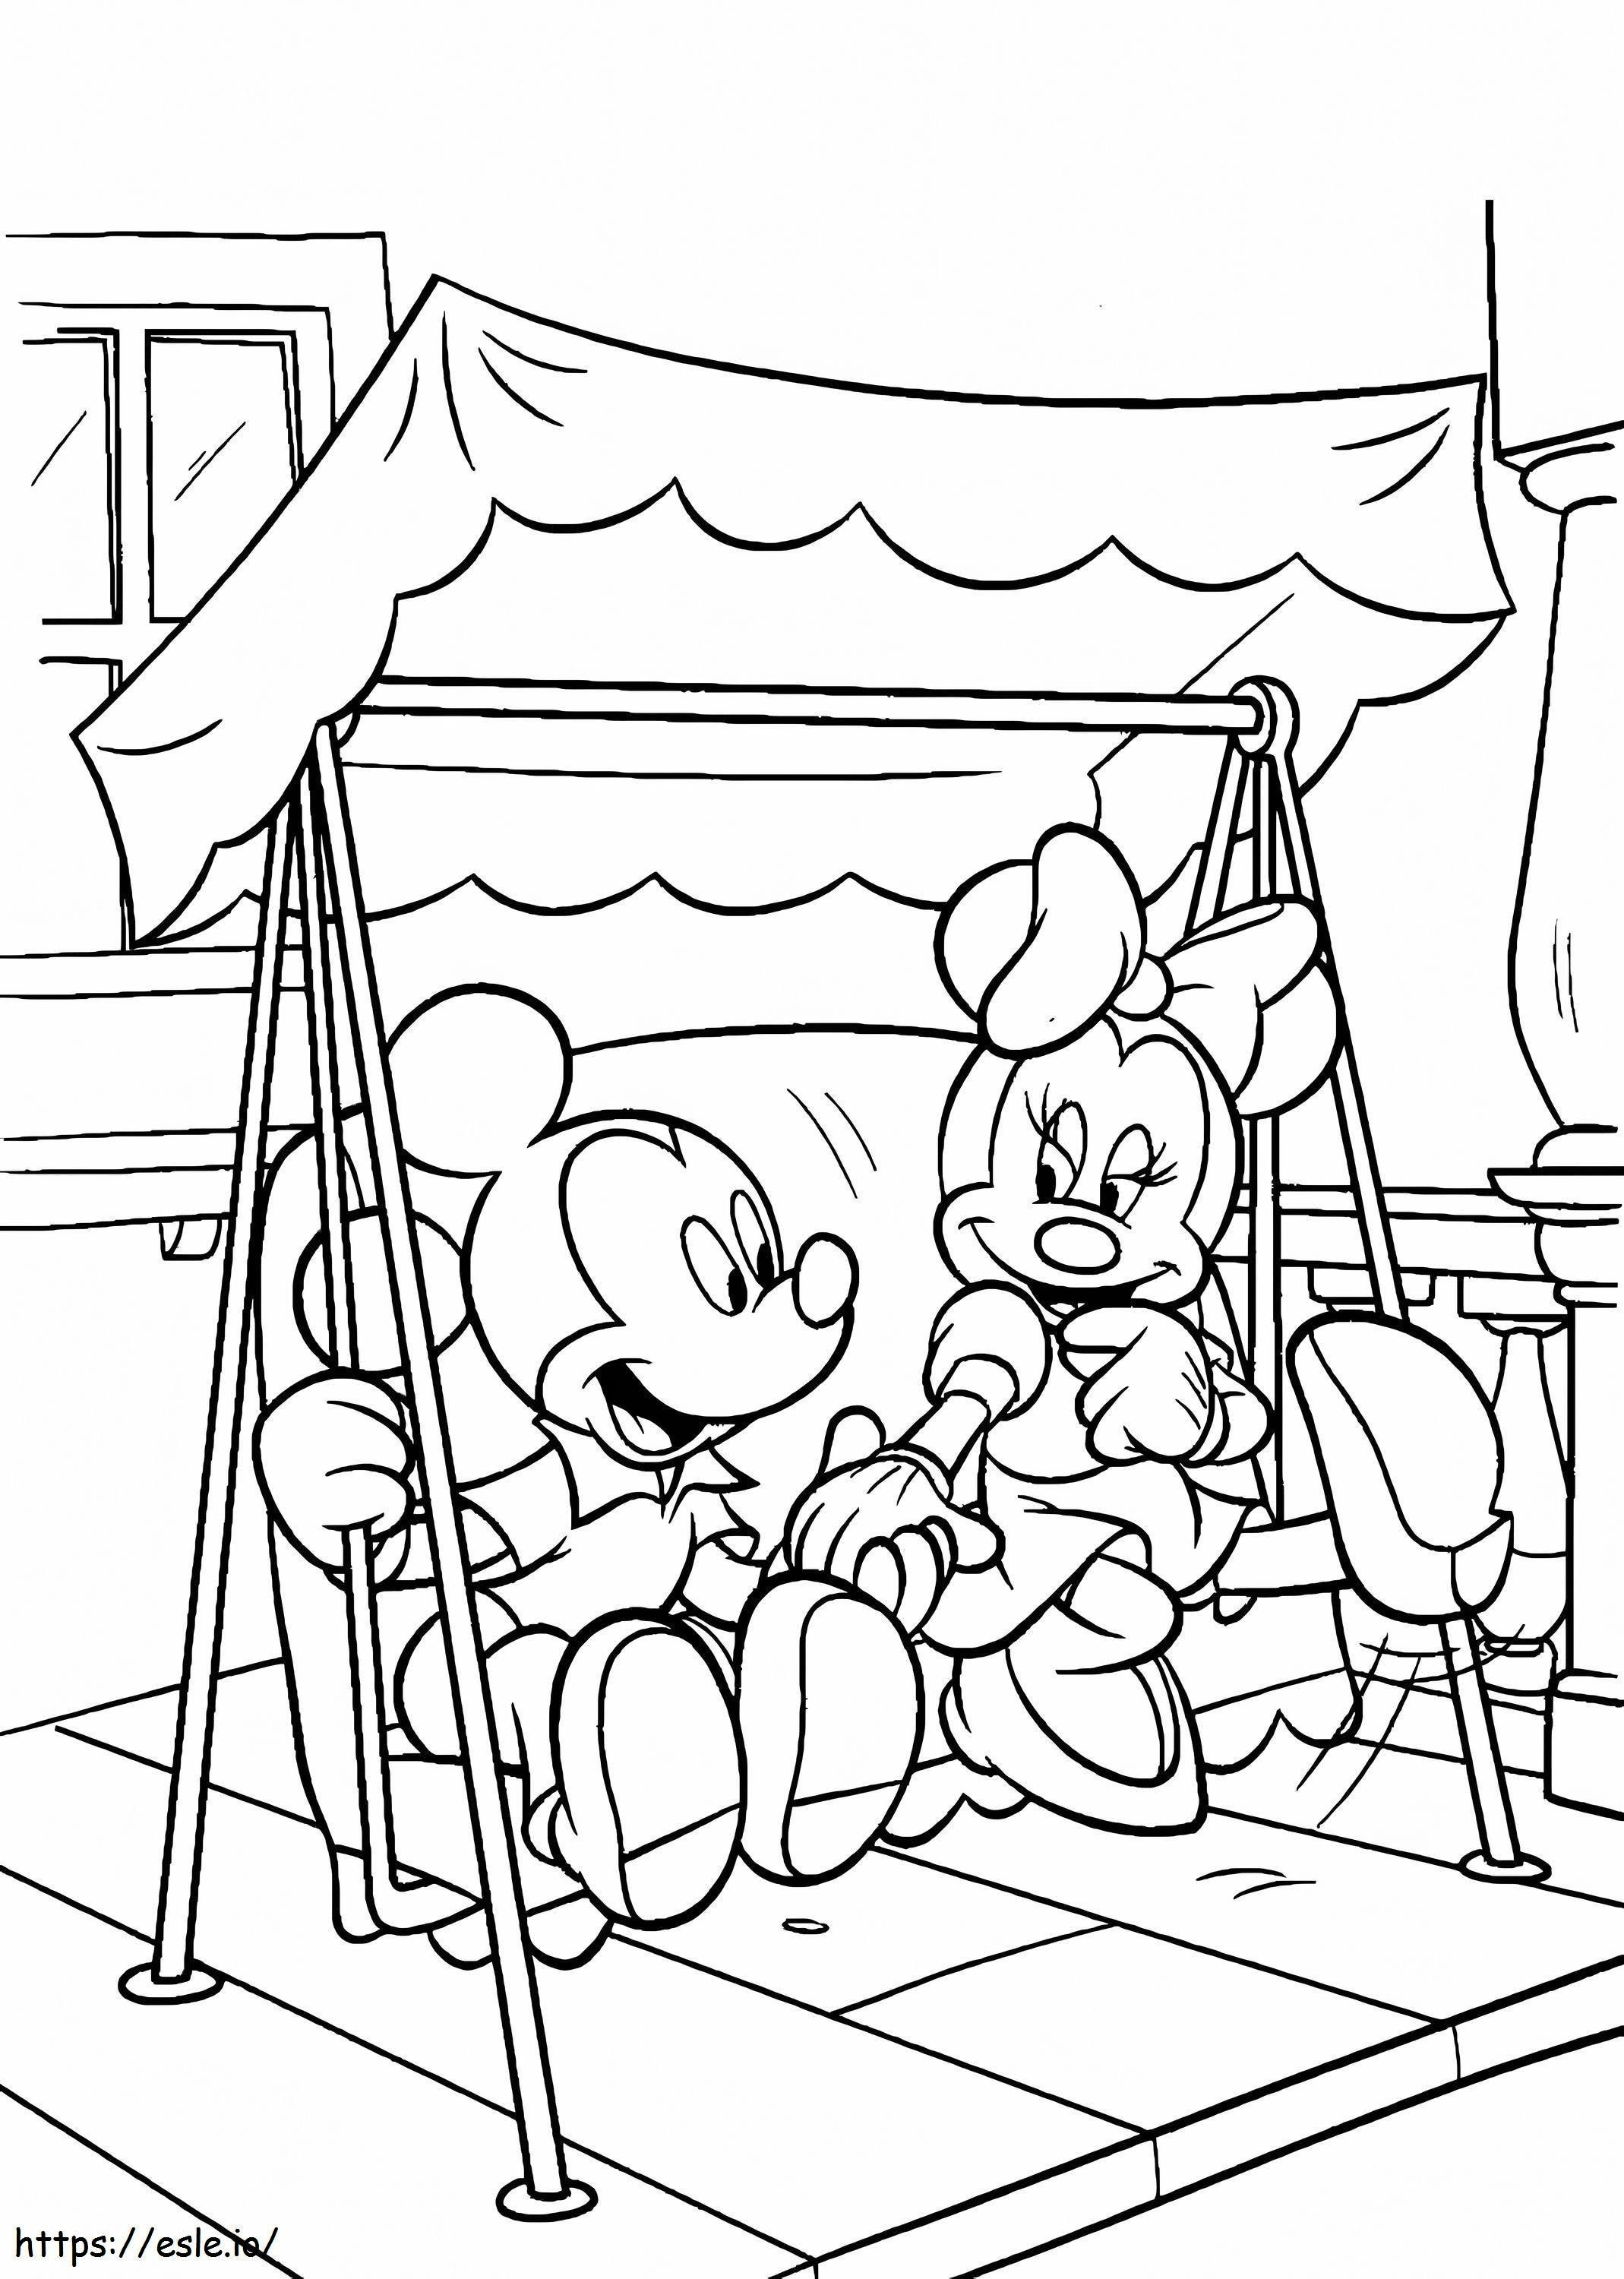 Mickey ve Minnie Mouse Salıncakta Oynuyor boyama